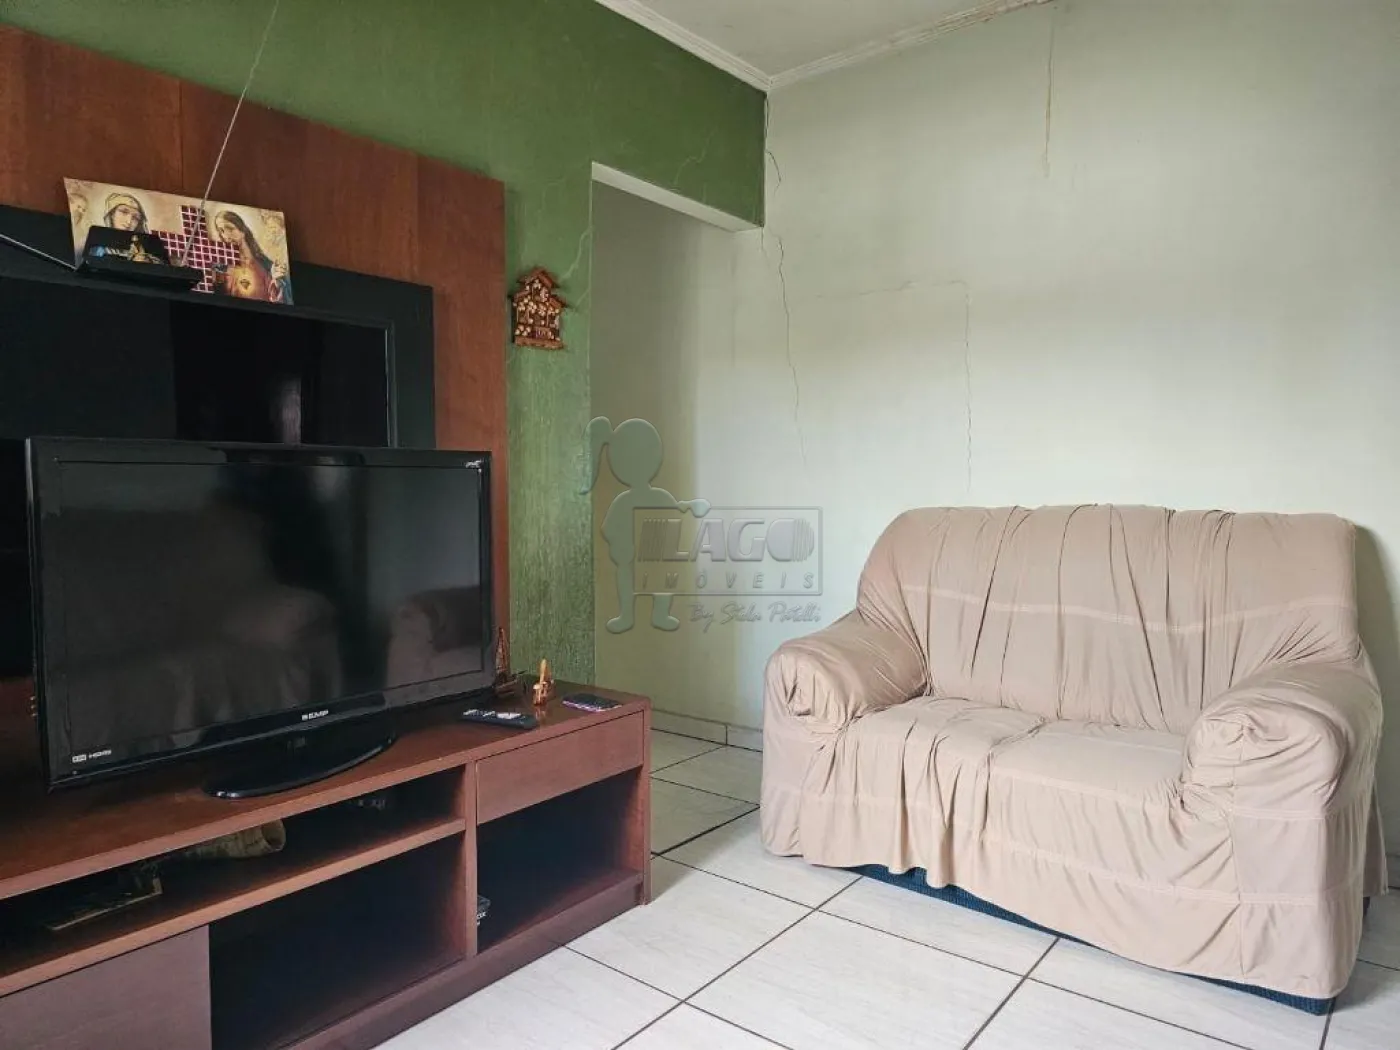 Comprar Casa / Padrão em Ribeirão Preto R$ 200.000,00 - Foto 3